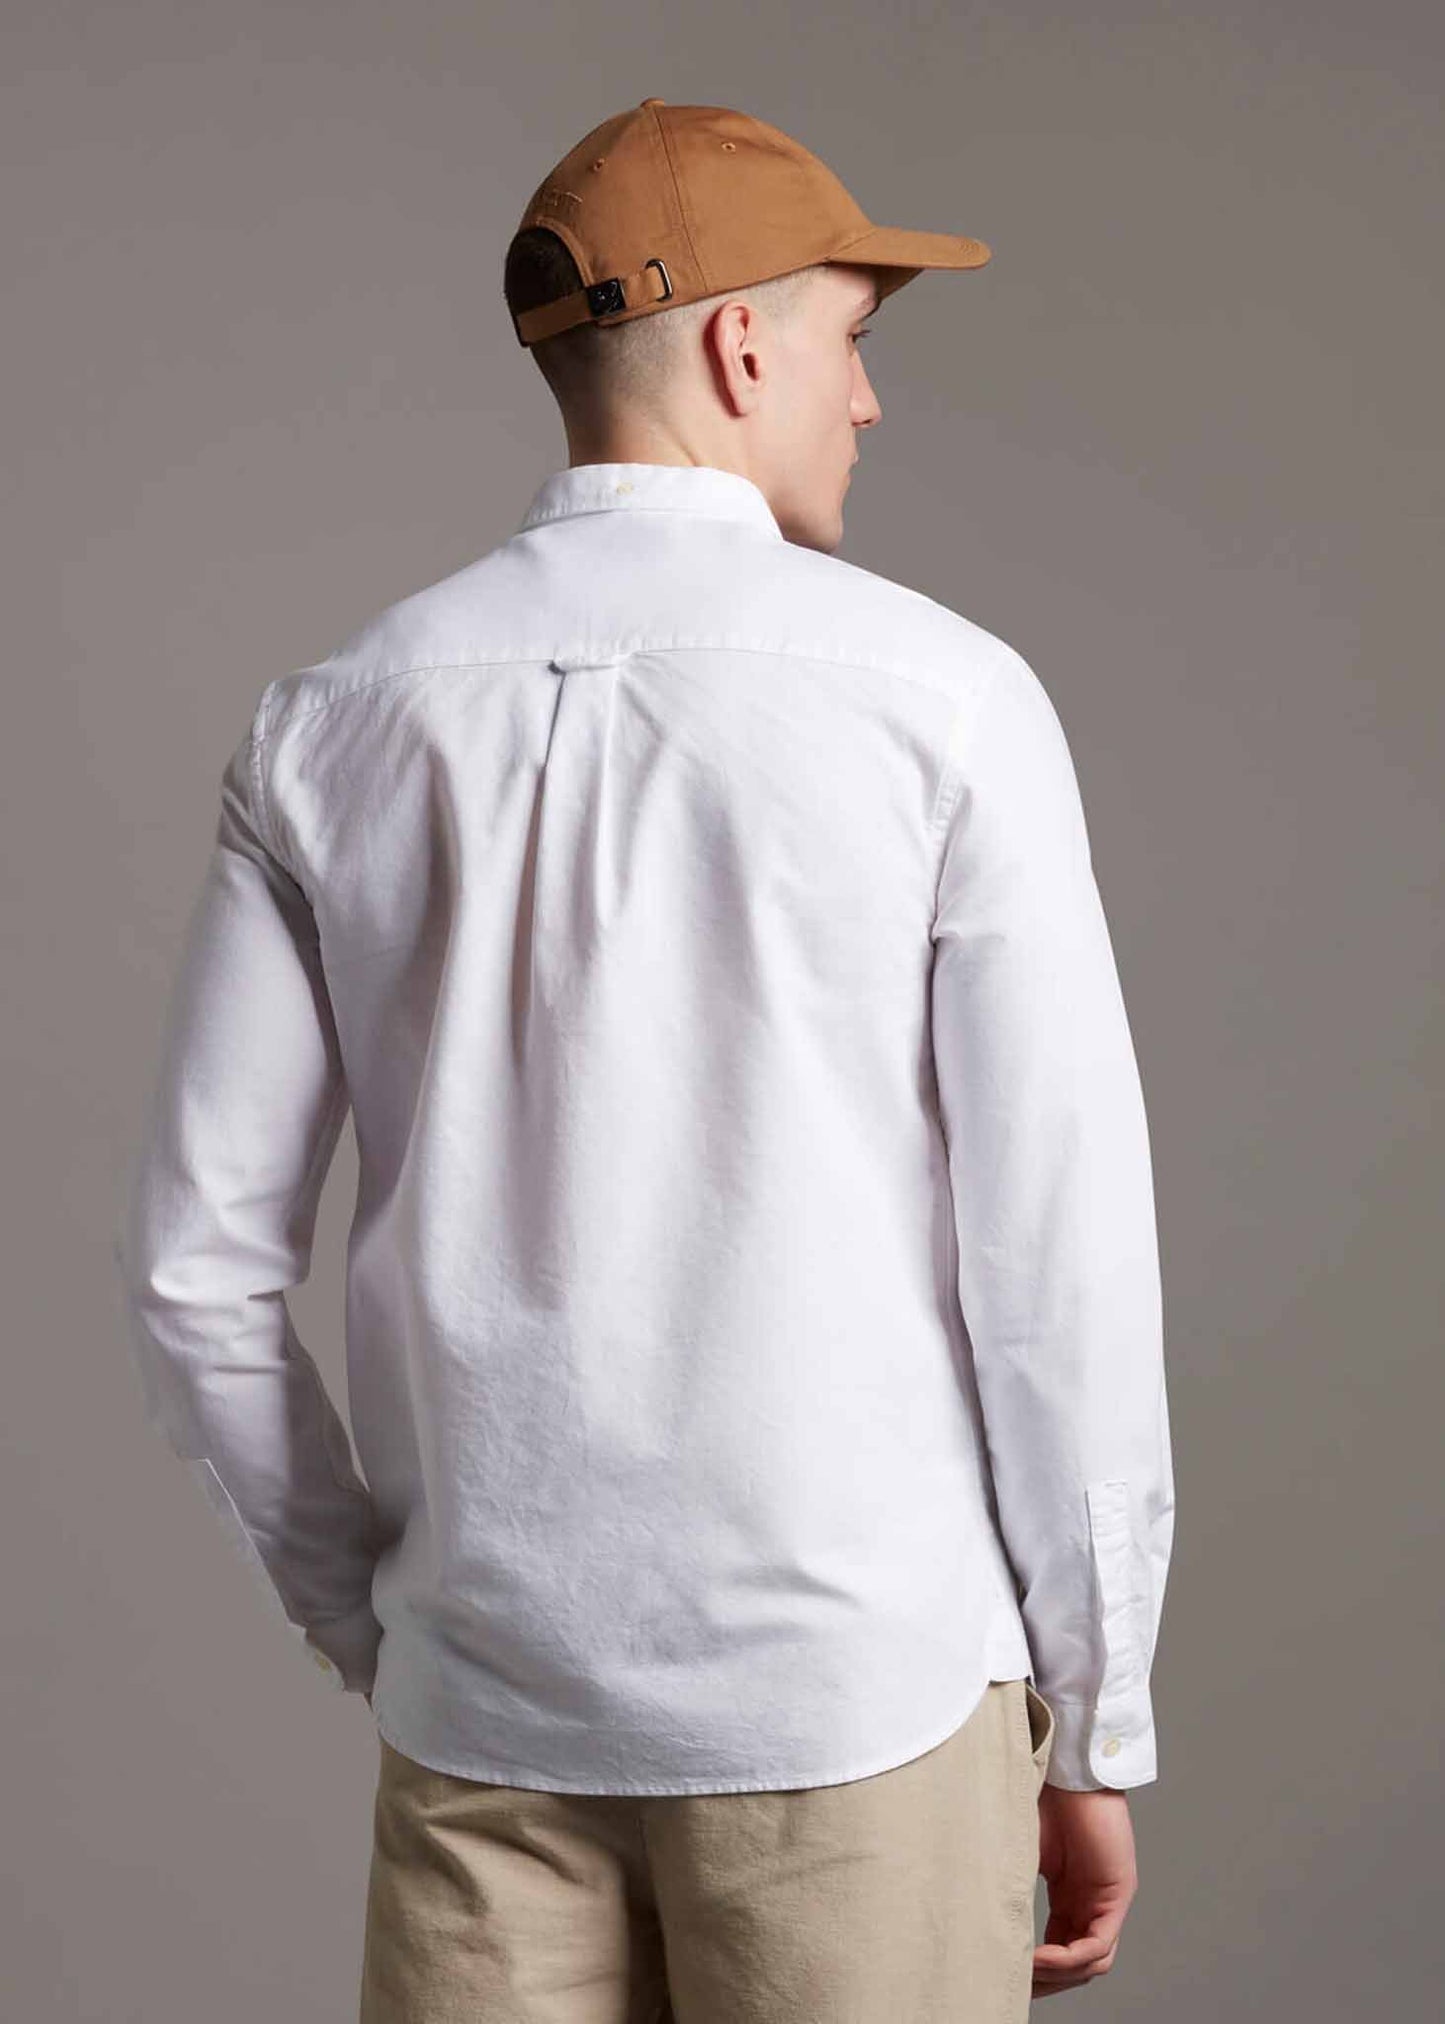 Light weight oxford shirt ss - white